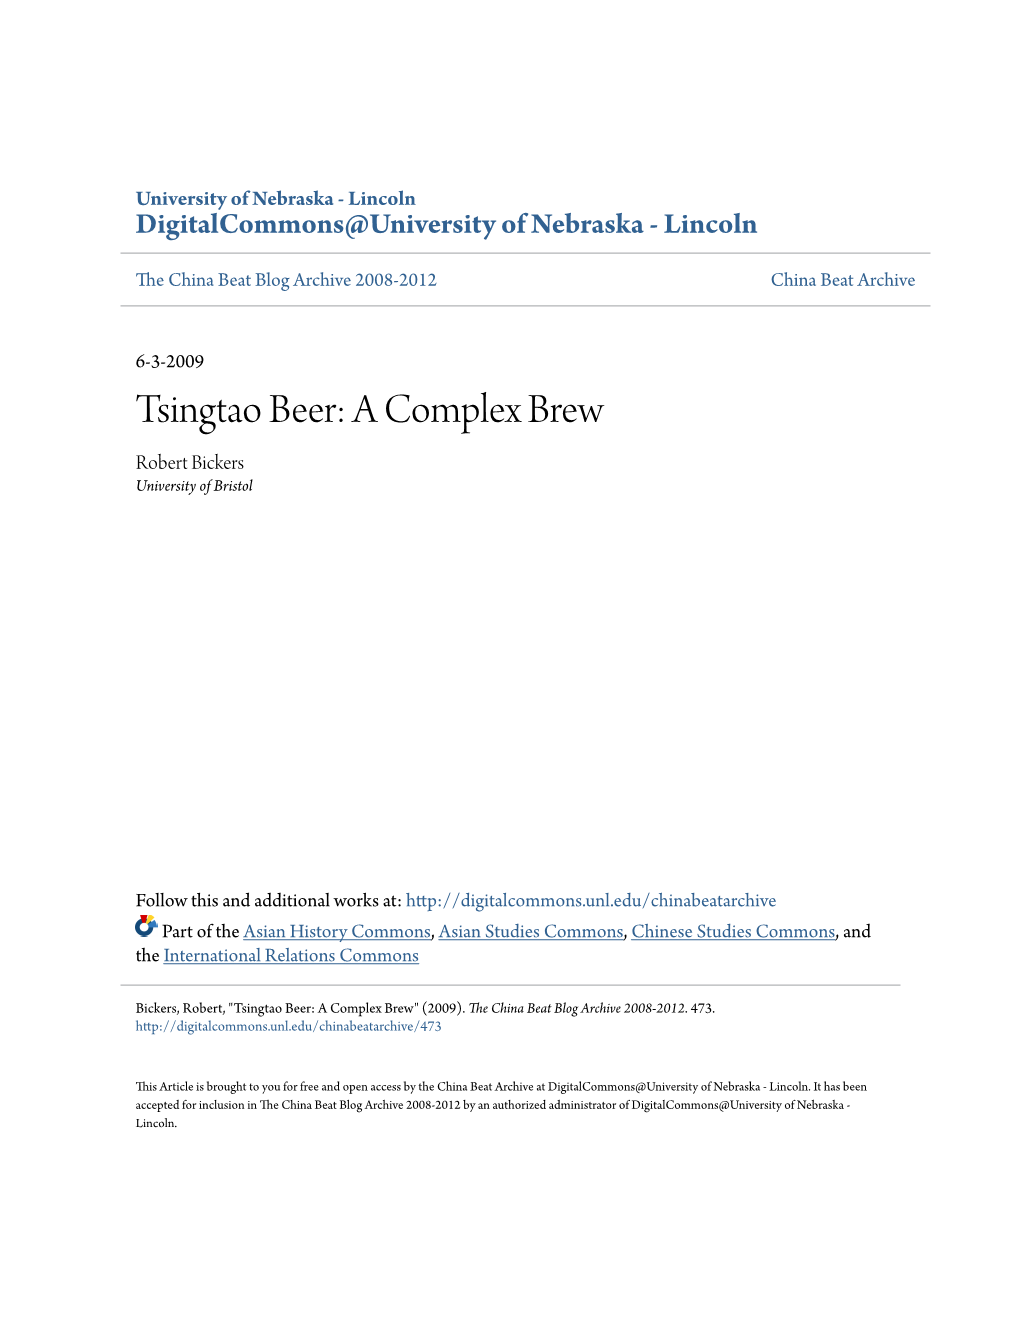 Tsingtao Beer: a Complex Brew Robert Bickers University of Bristol